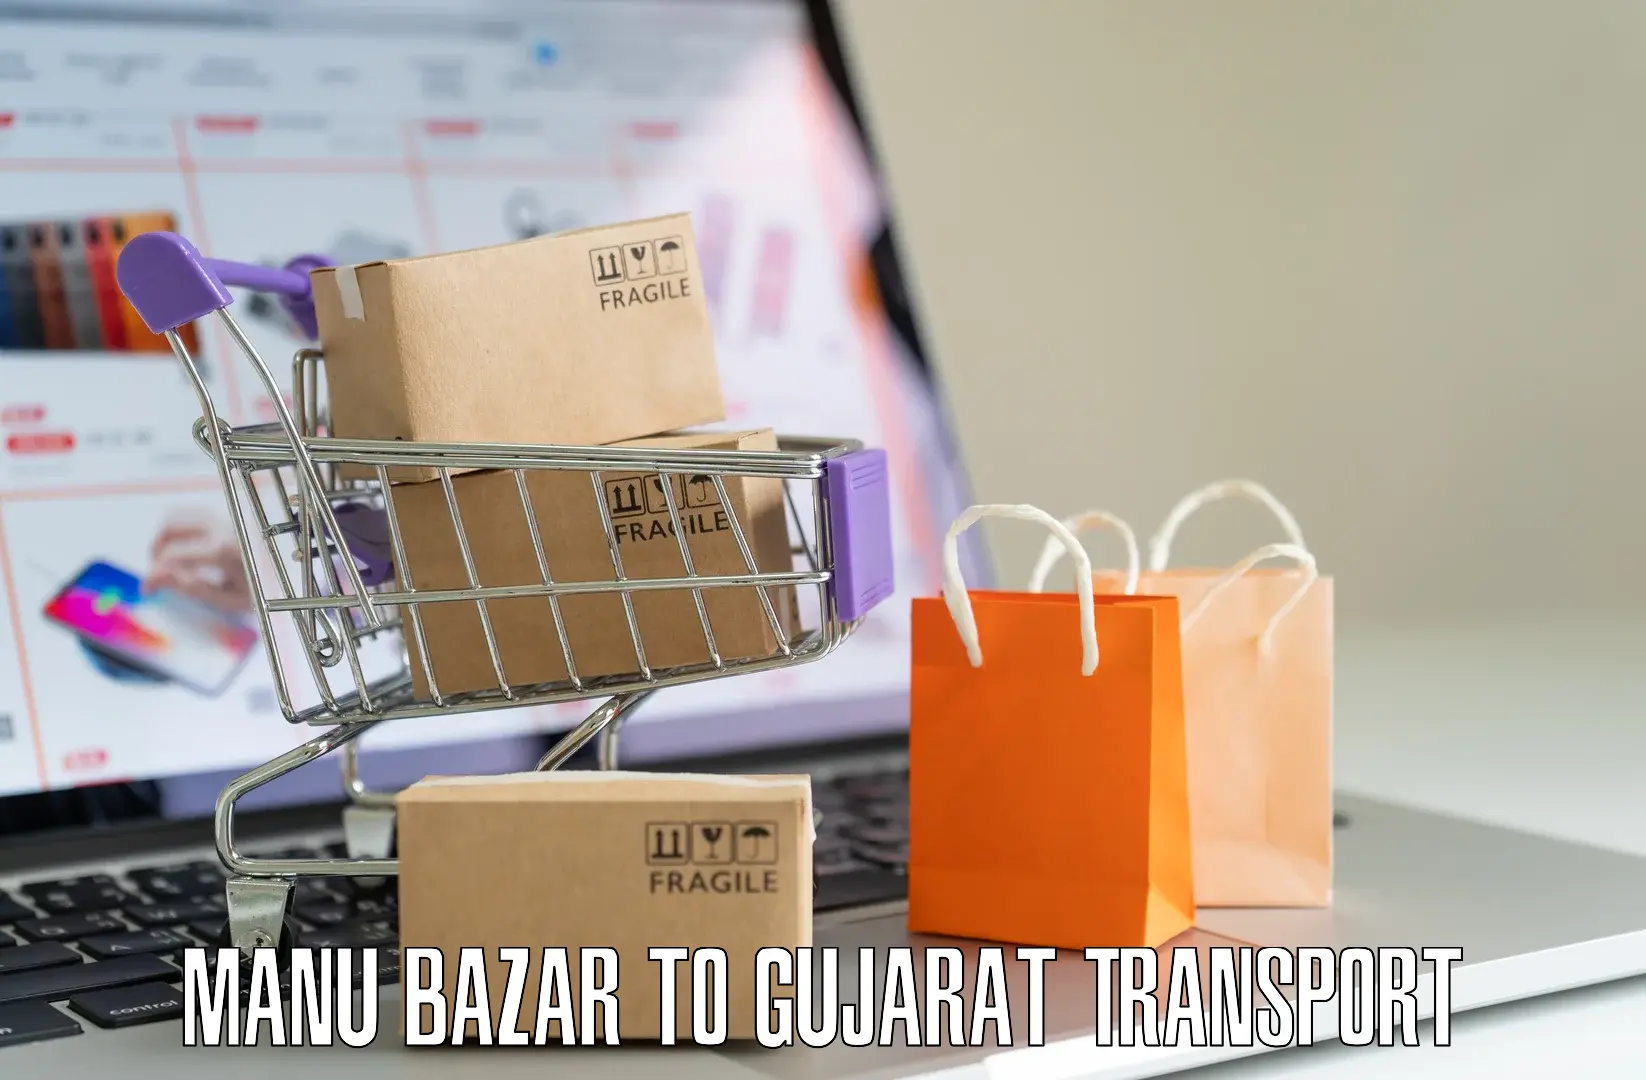 Road transport online services Manu Bazar to Gujarat